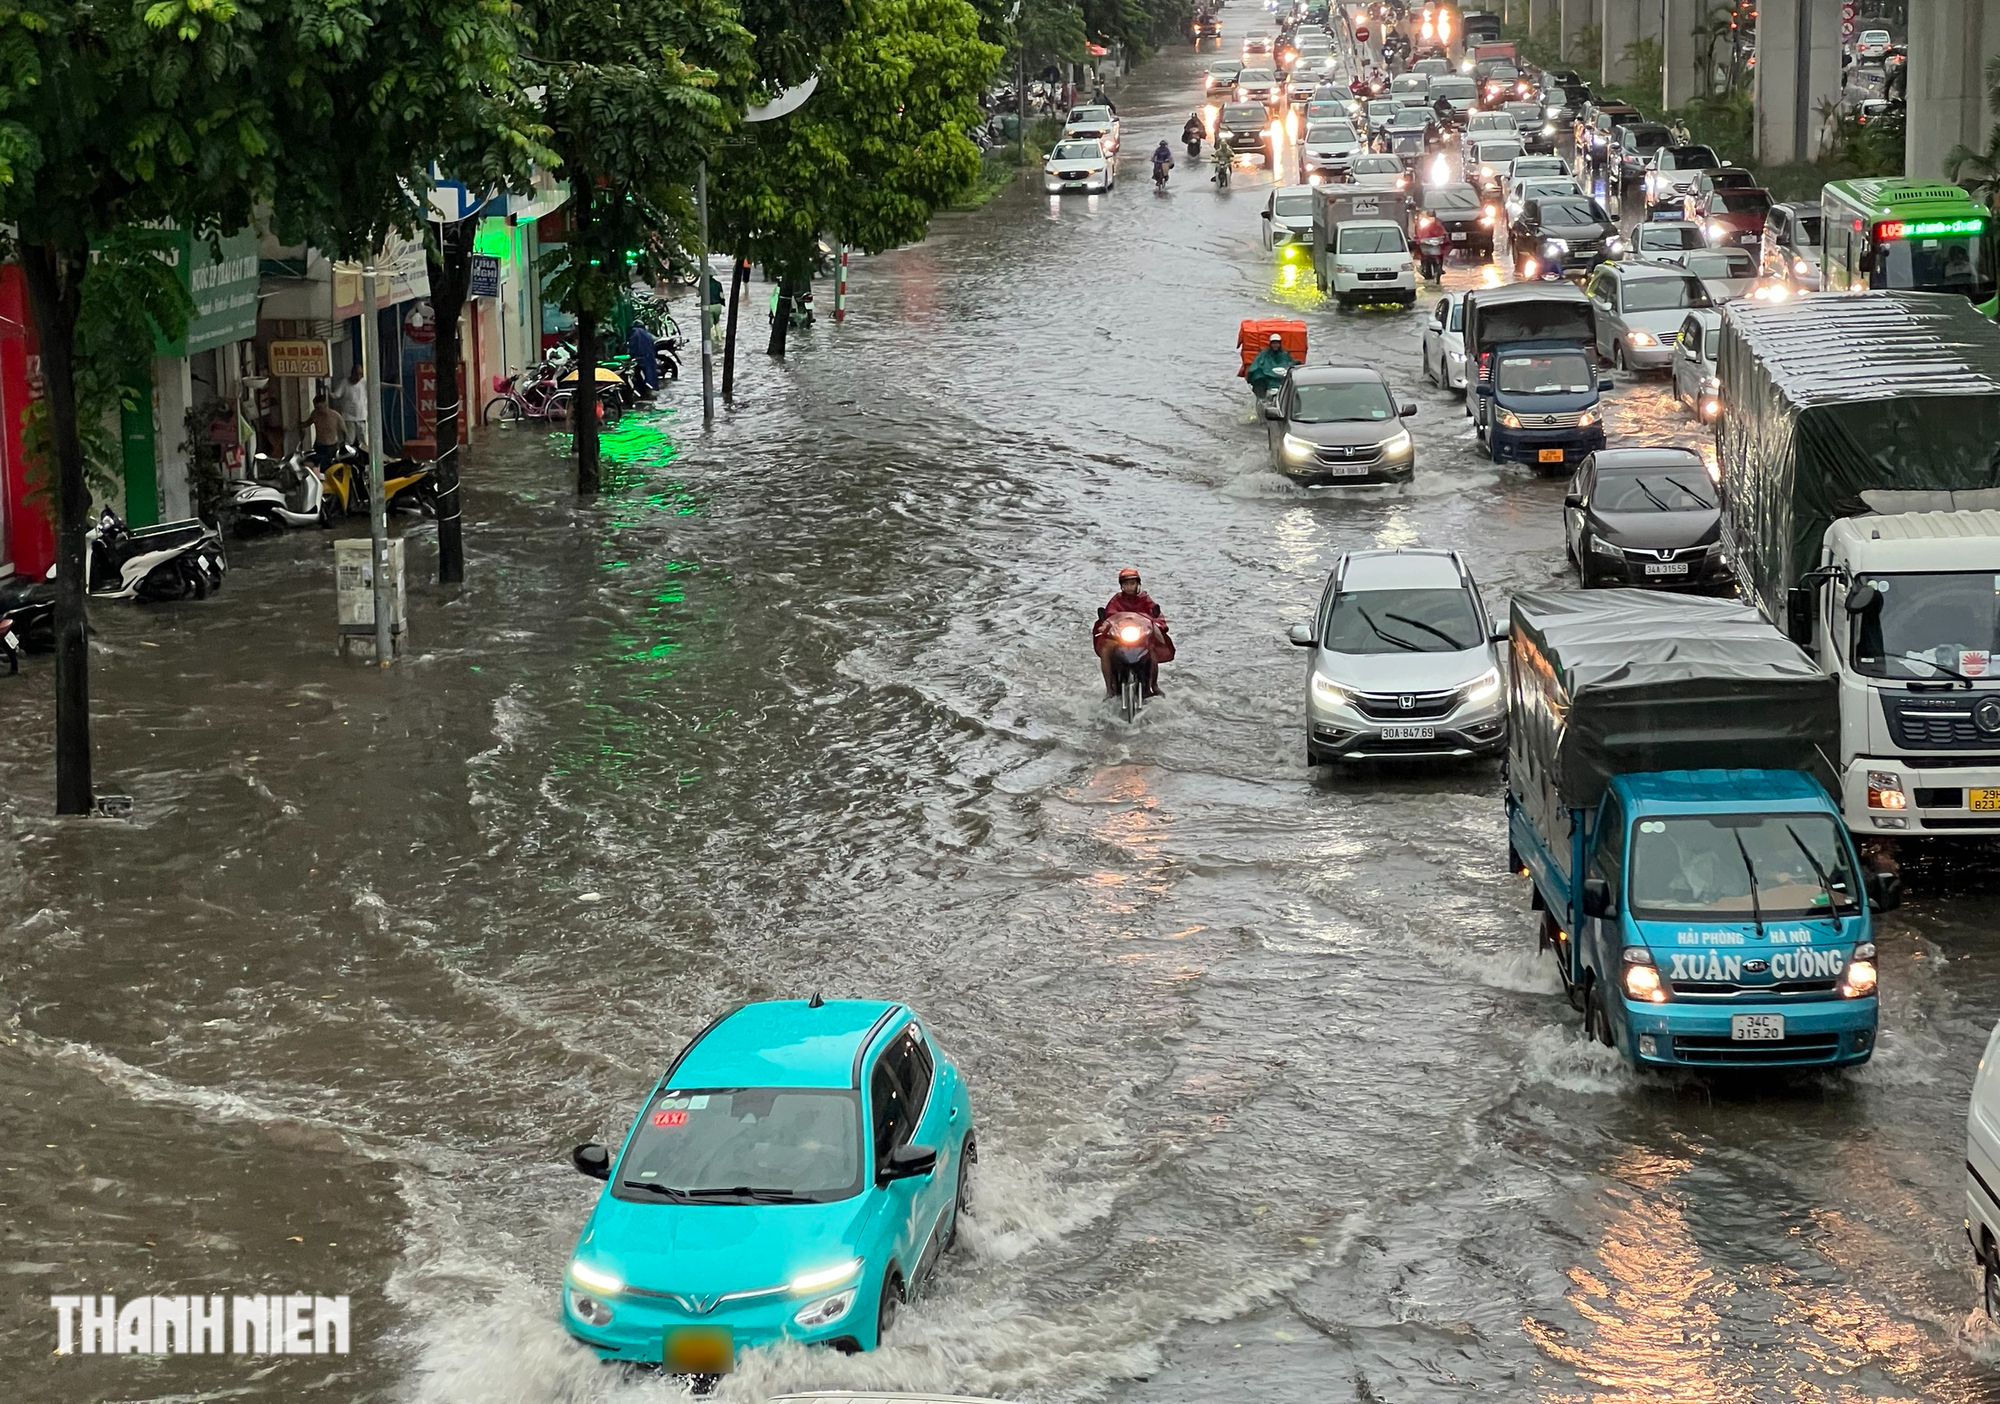 Hà Nội 'ngập như sông' sau mưa lớn, người dân khổ sở nhích từng mét trên đường - Ảnh 11.